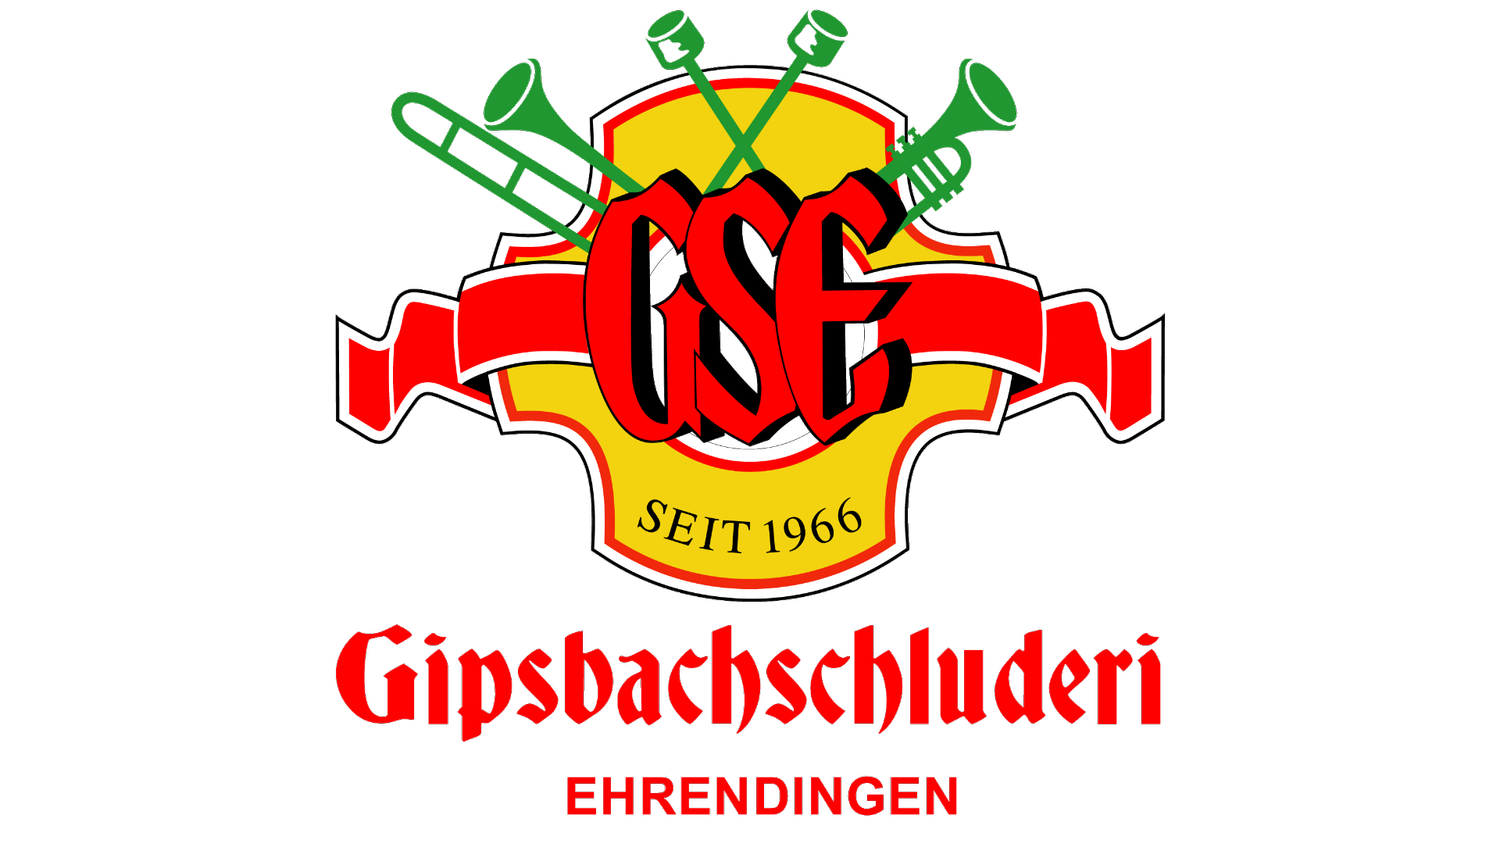 Gipsbachschluderi Ehrendingen